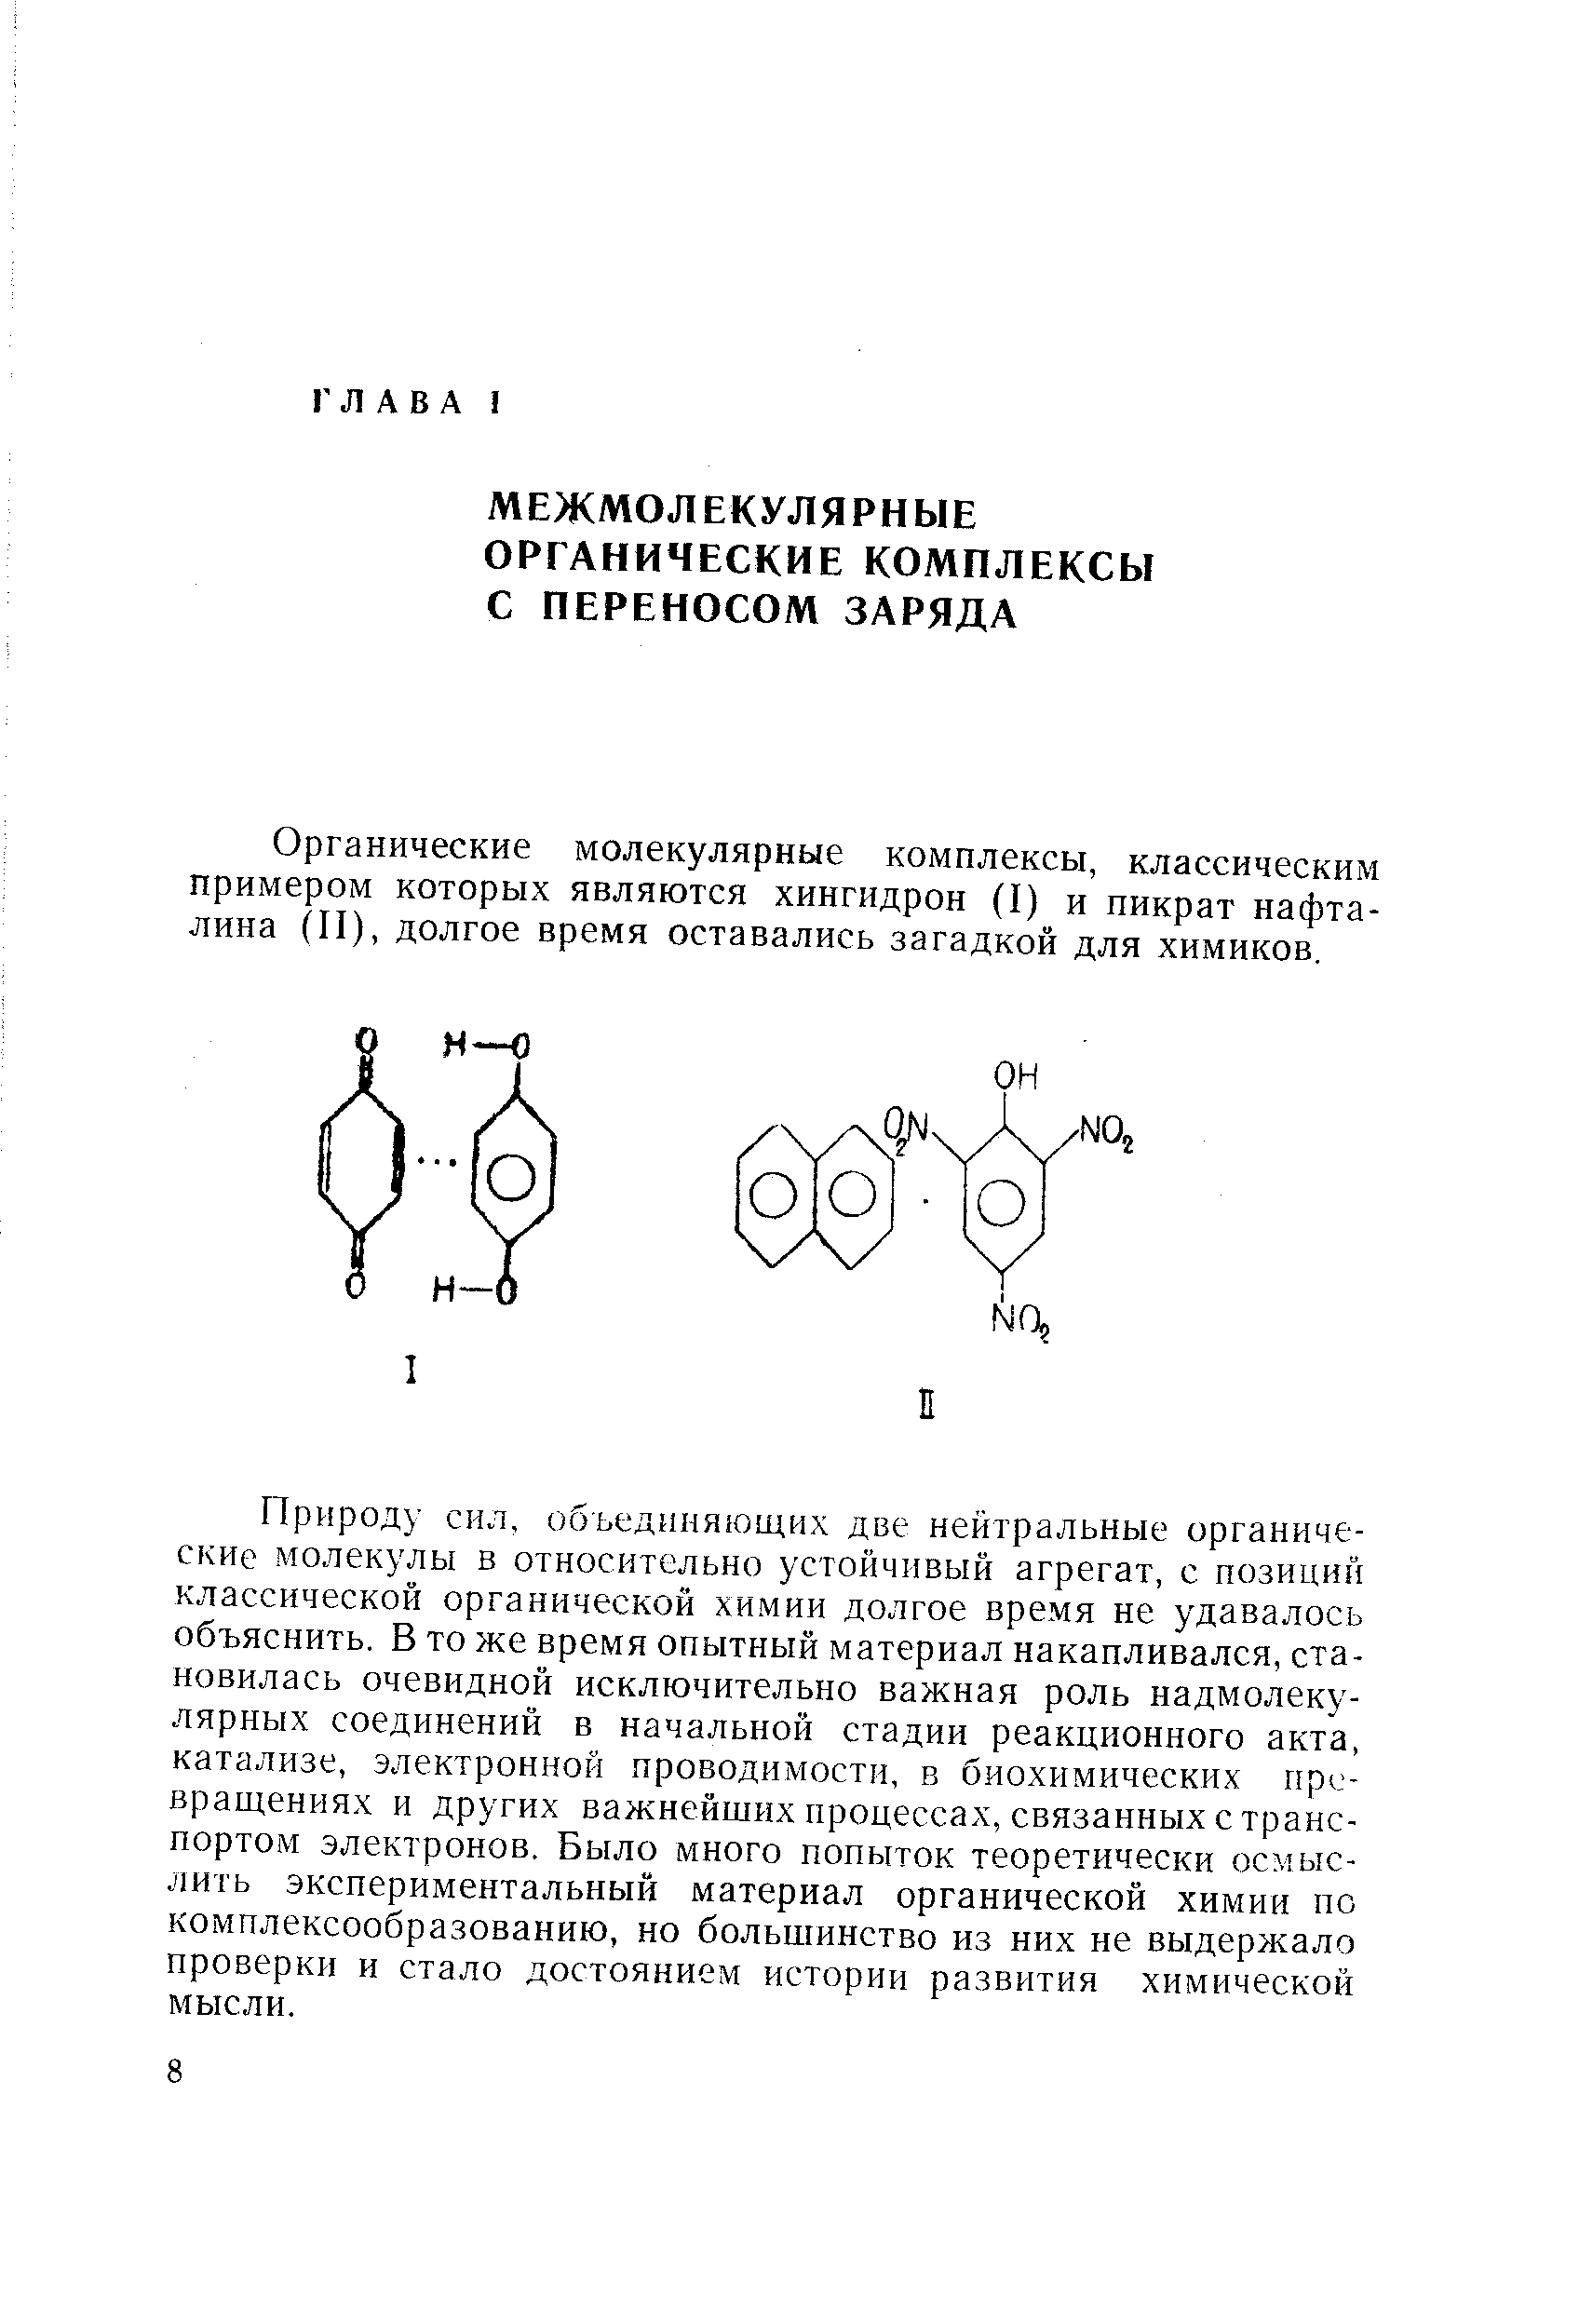 Органические молекулярные комплексы, классическим примером которых являются хингидрон (I) и пикрат нафталина (II), долгое время оставались загадкой для химиков.